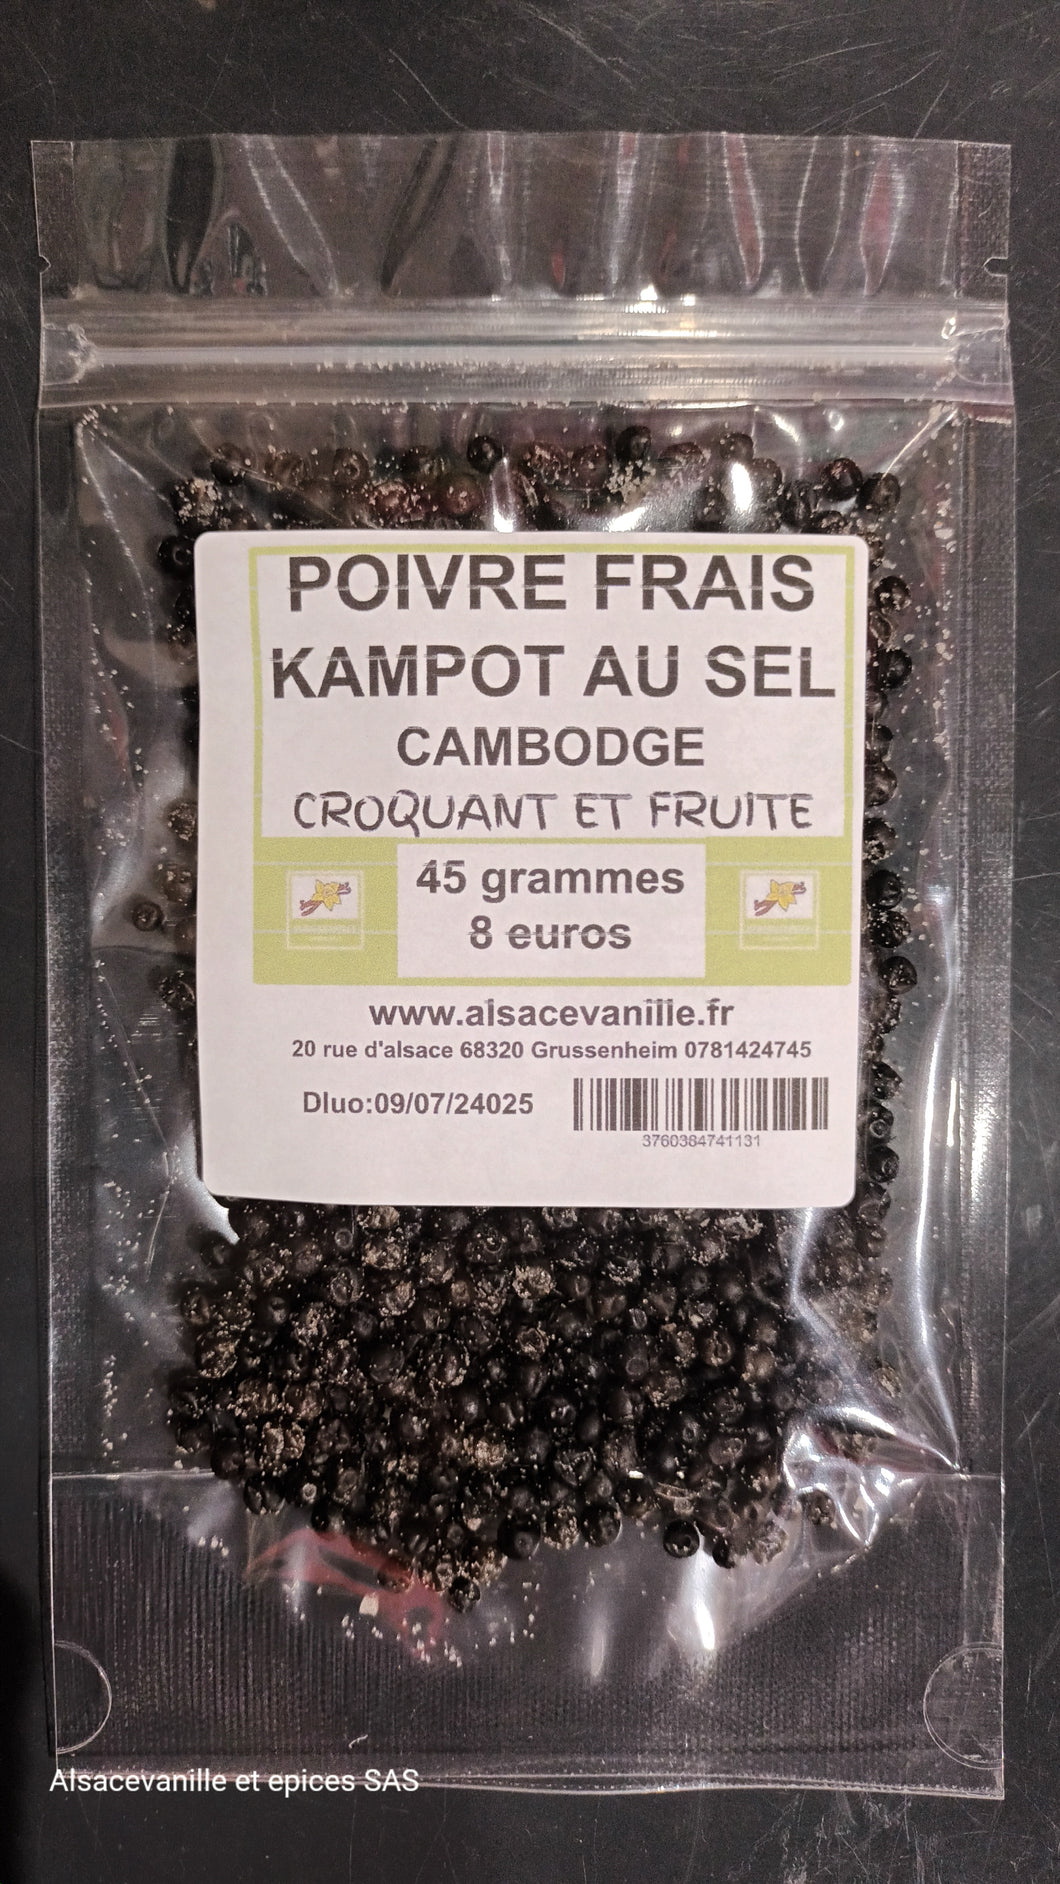 Poivre frais de Kampot au sel 45 grammes